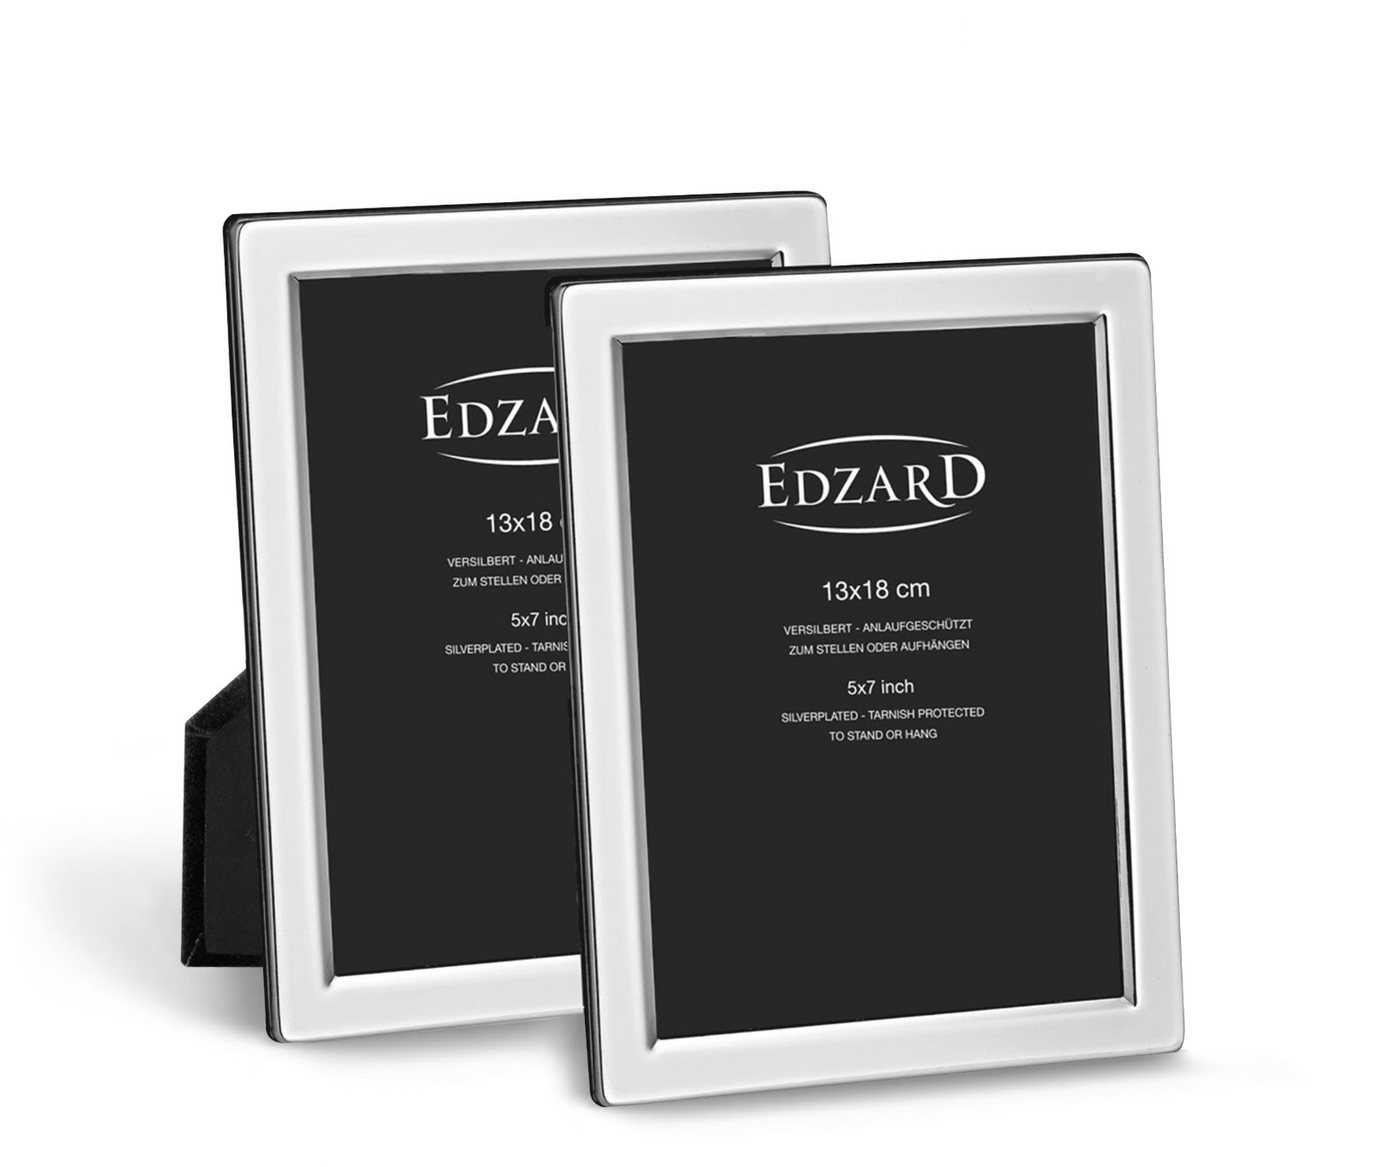 EDZARD Bilderrahmen Salerno, 2er Set für 13x18 cm Foto - edel versilbert & anlaufgeschützt von EDZARD